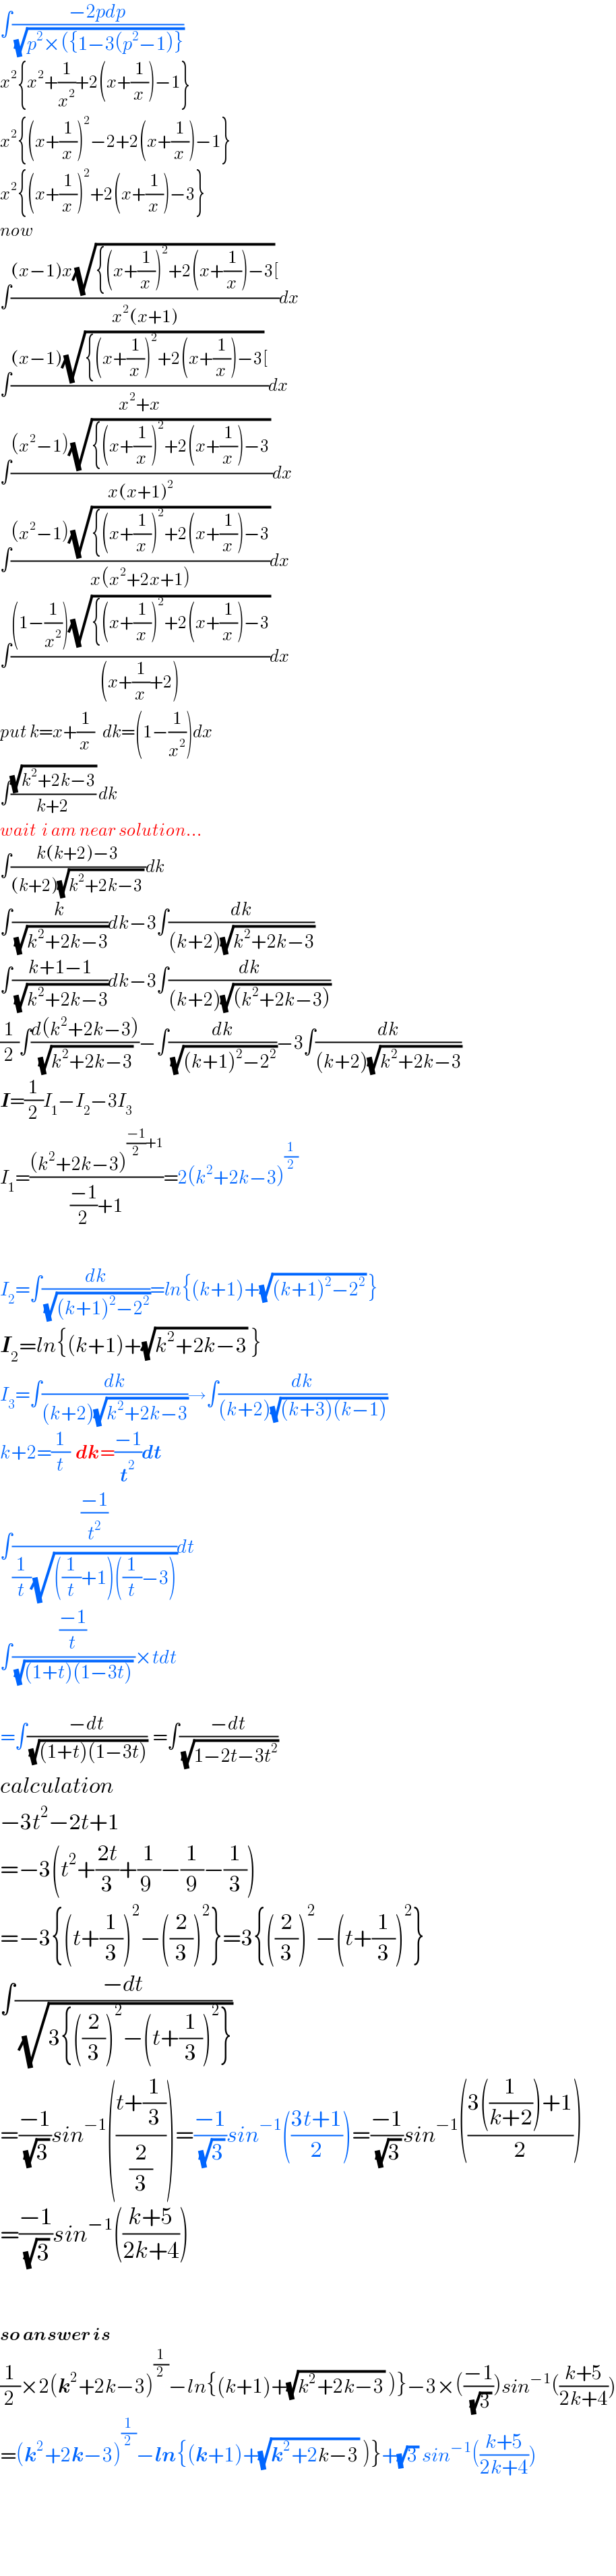 ∫((−2pdp)/(√(p^2 ×({1−3(p^2 −1)})))  x^2 {x^2 +(1/x^2 )+2(x+(1/x))−1}  x^2 {(x+(1/x))^2 −2+2(x+(1/x))−1}  x^2 {(x+(1/x))^2 +2(x+(1/x))−3}  now  ∫(((x−1)x(√({(x+(1/x))^2 +2(x+(1/x))−3))[)/(x^2 (x+1)))dx  ∫(((x−1)(√({(x+(1/x))^2 +2(x+(1/x))−3))[)/(x^2 +x))dx  ∫(((x^2 −1)(√({(x+(1/x))^2 +2(x+(1/x))−3)) )/(x(x+1)^2 ))dx  ∫(((x^2 −1)(√({(x+(1/x))^2 +2(x+(1/x))−3)))/(x(x^2 +2x+1)))dx  ∫(((1−(1/x^2 ))(√({(x+(1/x))^2 +2(x+(1/x))−3)))/((x+(1/x)+2)))dx  put k=x+(1/x)   dk=(1−(1/x^2 ))dx  ∫((√(k^2 +2k−3))/(k+2)) dk  wait  i am near solution...  ∫((k(k+2)−3)/((k+2)(√(k^2 +2k−3)) ))dk  ∫(k/(√(k^2 +2k−3)))dk−3∫(dk/((k+2)(√(k^2 +2k−3))))  ∫((k+1−1)/(√(k^2 +2k−3)))dk−3∫(dk/((k+2)(√((k^2 +2k−3)))))  (1/2)∫((d(k^2 +2k−3))/(√(k^2 +2k−3)))−∫(dk/(√((k+1)^2 −2^2 )))−3∫(dk/((k+2)(√(k^2 +2k−3))))  I=(1/2)I_1 −I_2 −3I_3   I_1 =(((k^2 +2k−3)^(((−1)/2)+1) )/(((−1)/2)+1))=2(k^2 +2k−3)^(1/2)     I_2 =∫(dk/(√((k+1)^2 −2^2 )))=ln{(k+1)+(√((k+1)^2 −2^2 )) }  I_2 =ln{(k+1)+(√(k^2 +2k−3)) }  I_3 =∫(dk/((k+2)(√(k^2 +2k−3))))→∫(dk/((k+2)(√((k+3)(k−1)))))  k+2=(1/t)  dk=((−1)/t^2 )dt  ∫(((−1)/t^2 )/((1/t)(√(((1/t)+1)((1/t)−3)))))dt  ∫(((−1)/t)/((√((1+t)(1−3t))) ))×tdt    =∫((−dt)/(√((1+t)(1−3t))))  =∫((−dt)/(√(1−2t−3t^2 )))  calculation  −3t^2 −2t+1  =−3(t^2 +((2t)/3)+(1/(9 ))−(1/9)−(1/3))  =−3{(t+(1/3))^2 −((2/3))^2 }=3{((2/3))^2 −(t+(1/3))^2 }  ∫((−dt)/(√(3{((2/3))^2 −(t+(1/3))^2 })))  =((−1)/(√3))sin^(−1) (((t+(1/3))/(2/3)))=((−1)/(√3))sin^(−1) (((3t+1)/2))=((−1)/(√3))sin^(−1) (((3((1/(k+2)))+1)/2))  =((−1)/(√3))sin^(−1) (((k+5)/(2k+4)))      so answer is  (1/2)×2(k^2 +2k−3)^(1/2) −ln{(k+1)+(√(k^2 +2k−3)) )}−3×(((−1)/(√3)))sin^(−1) (((k+5)/(2k+4)))  =(k^2 +2k−3)^(1/2) −ln{(k+1)+(√(k^2 +2k−3)) )}+(√3) sin^(−1) (((k+5)/(2k+4)))      